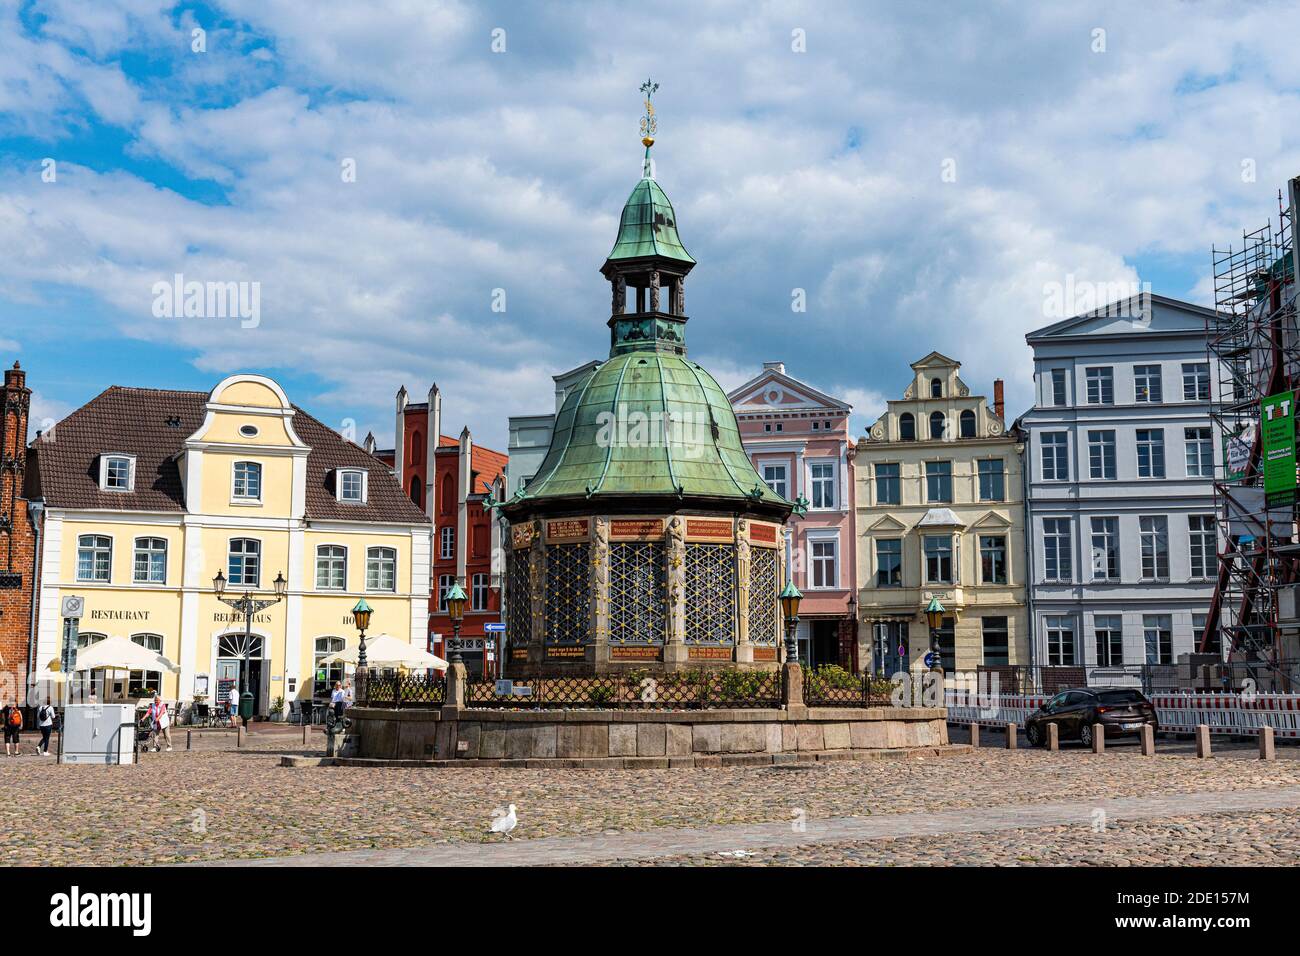 Fontaine d'eau sur la place du marché, ville hanséatique de Wismar, site du patrimoine mondial de l'UNESCO, Mecklembourg-Poméranie-Occidentale, Allemagne, Europe Banque D'Images